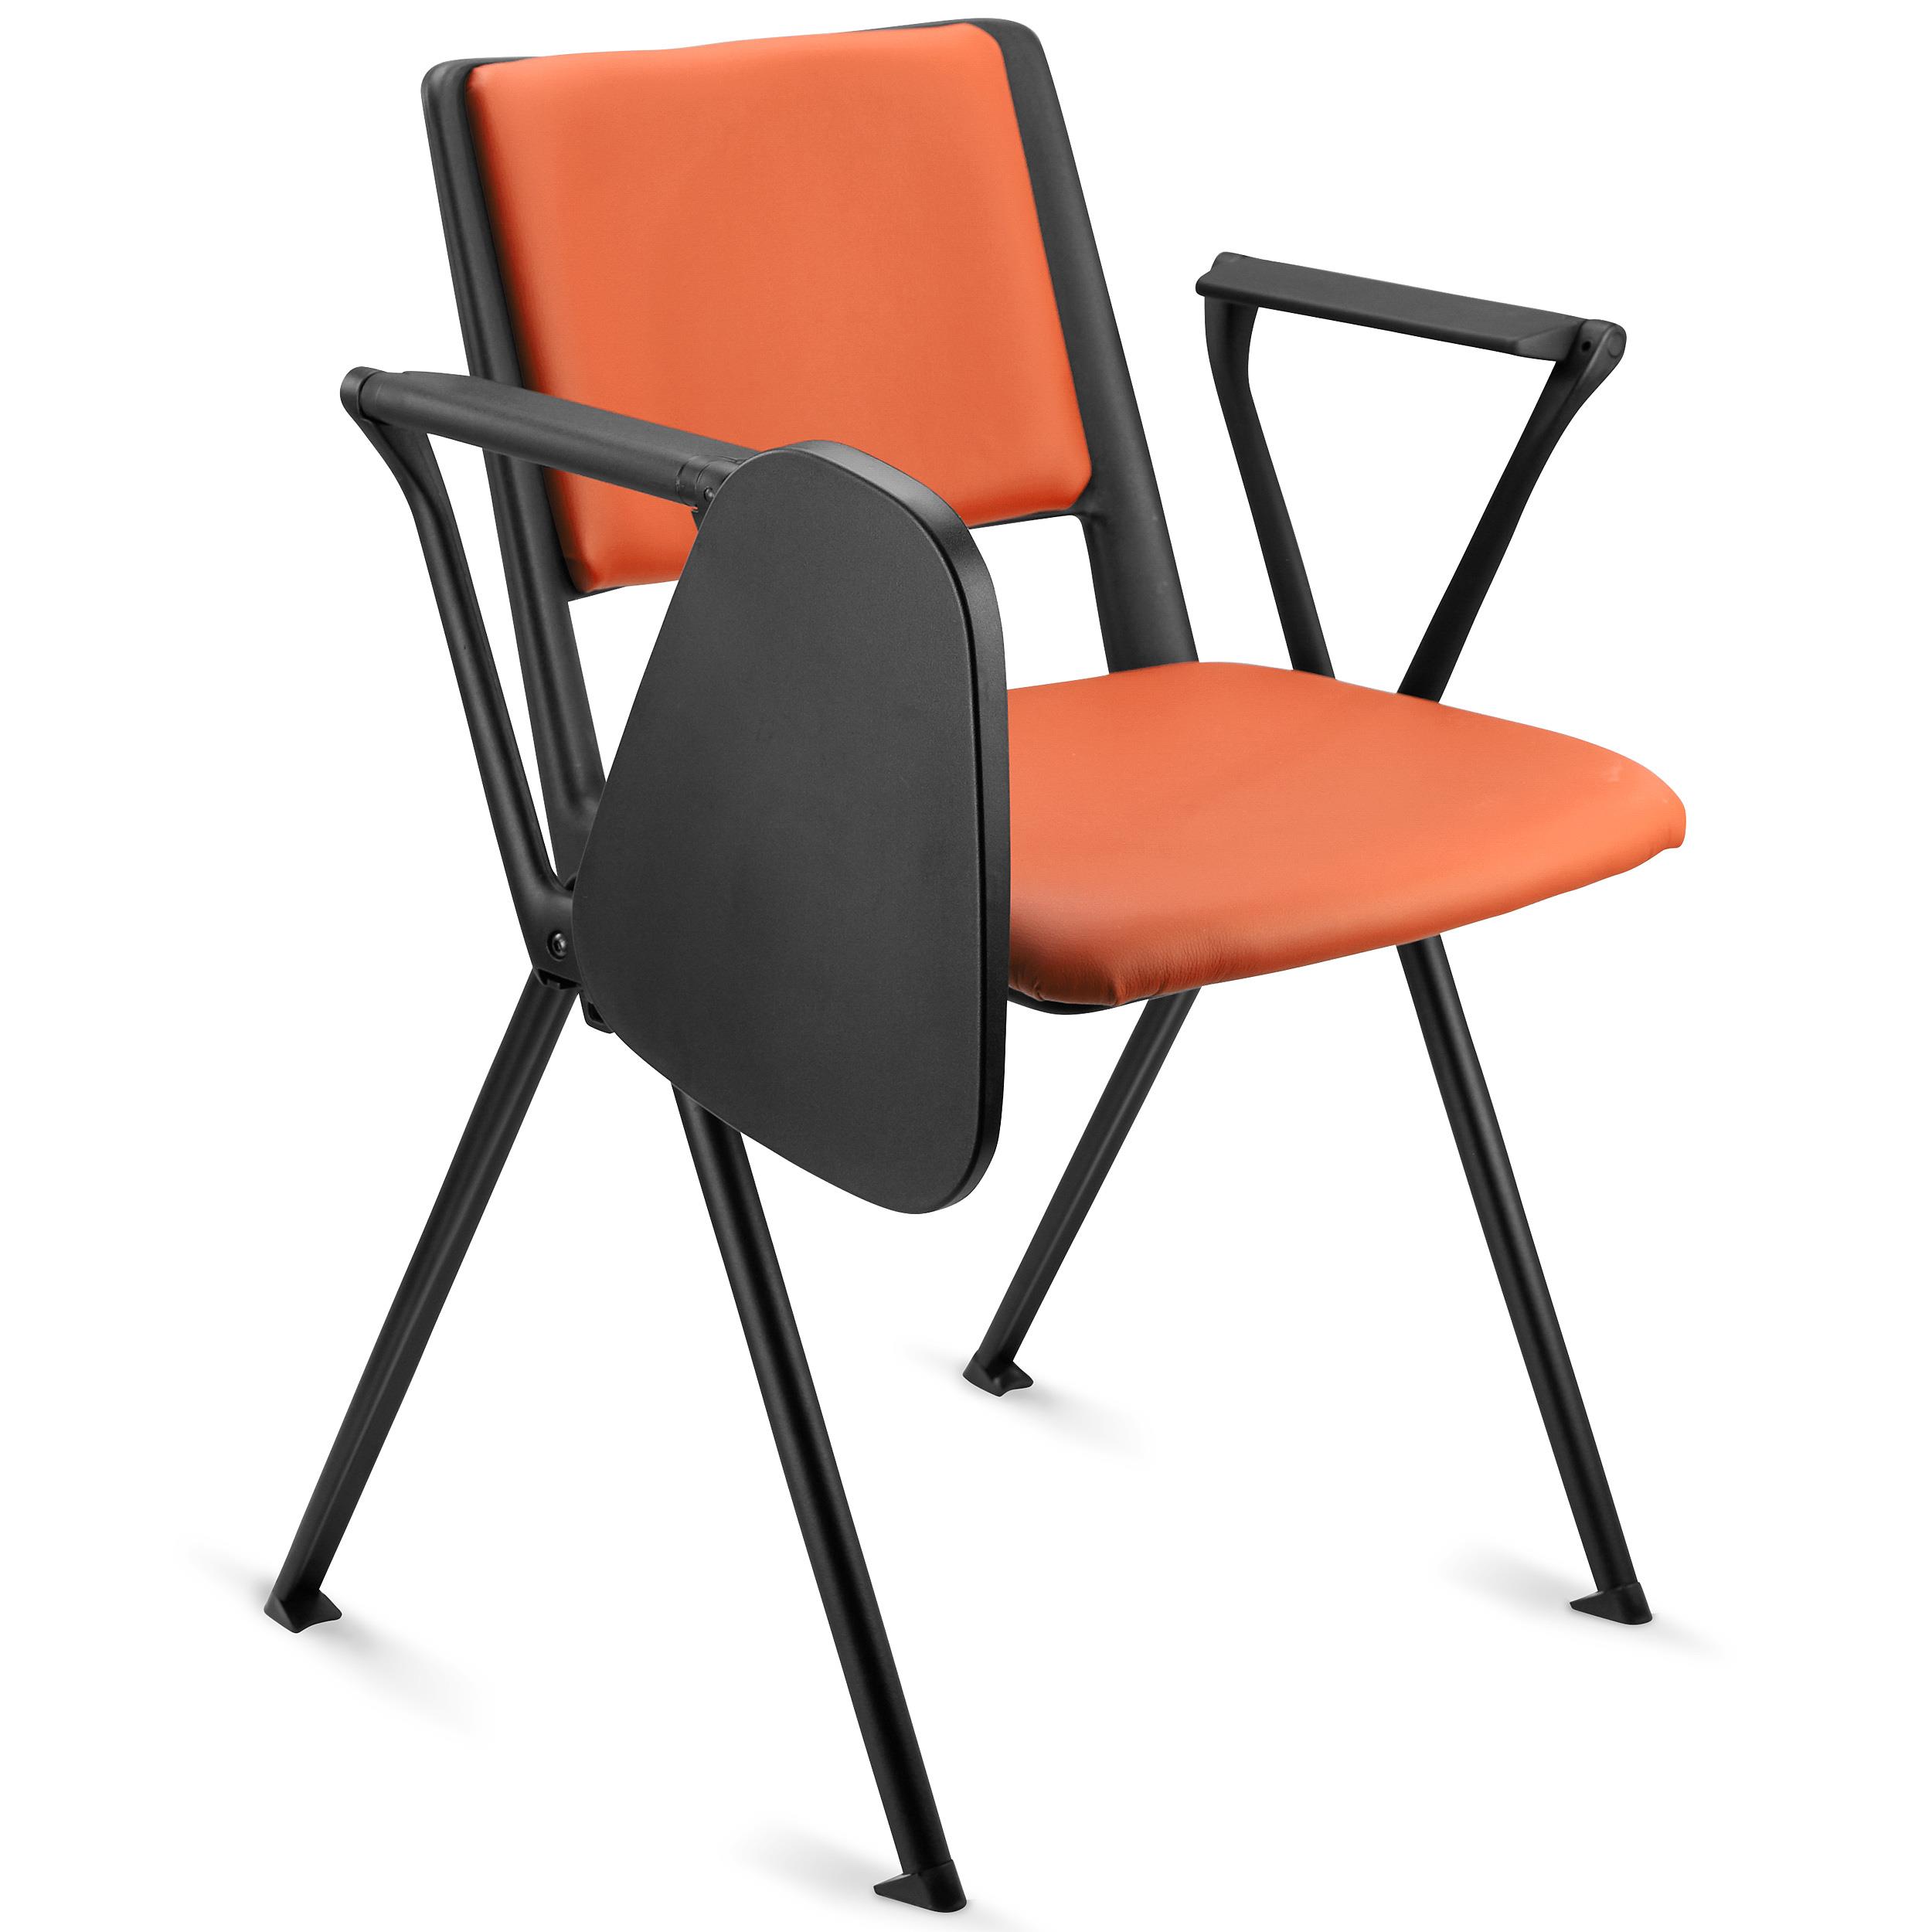 Konferenzstuhl CARINA MIT SCHREIBBRETT, stapel- und reihenverbindbar, schwarzes Stahlgestell, Kunstleder, Farbe Orange